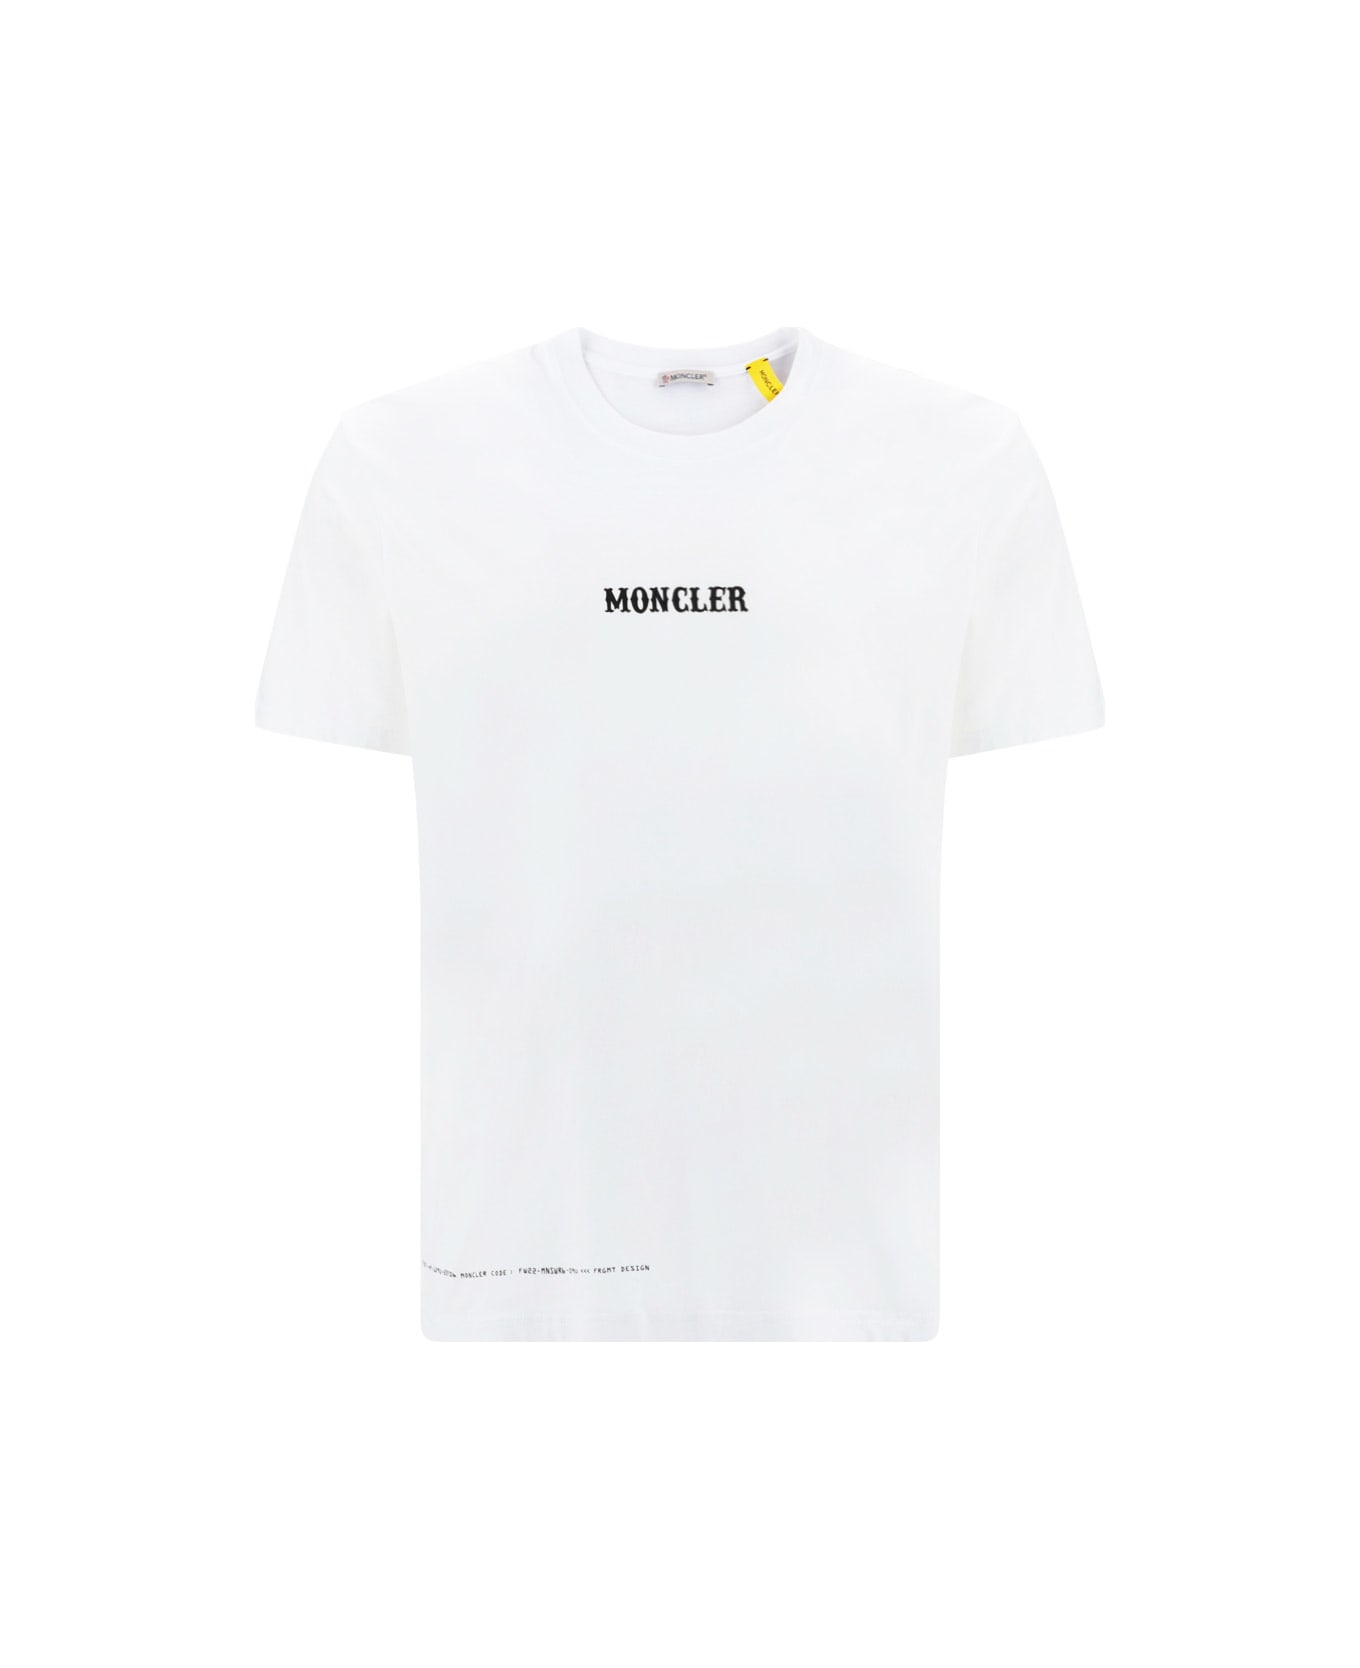 Moncler Genius Circus T-shirt - WHITE